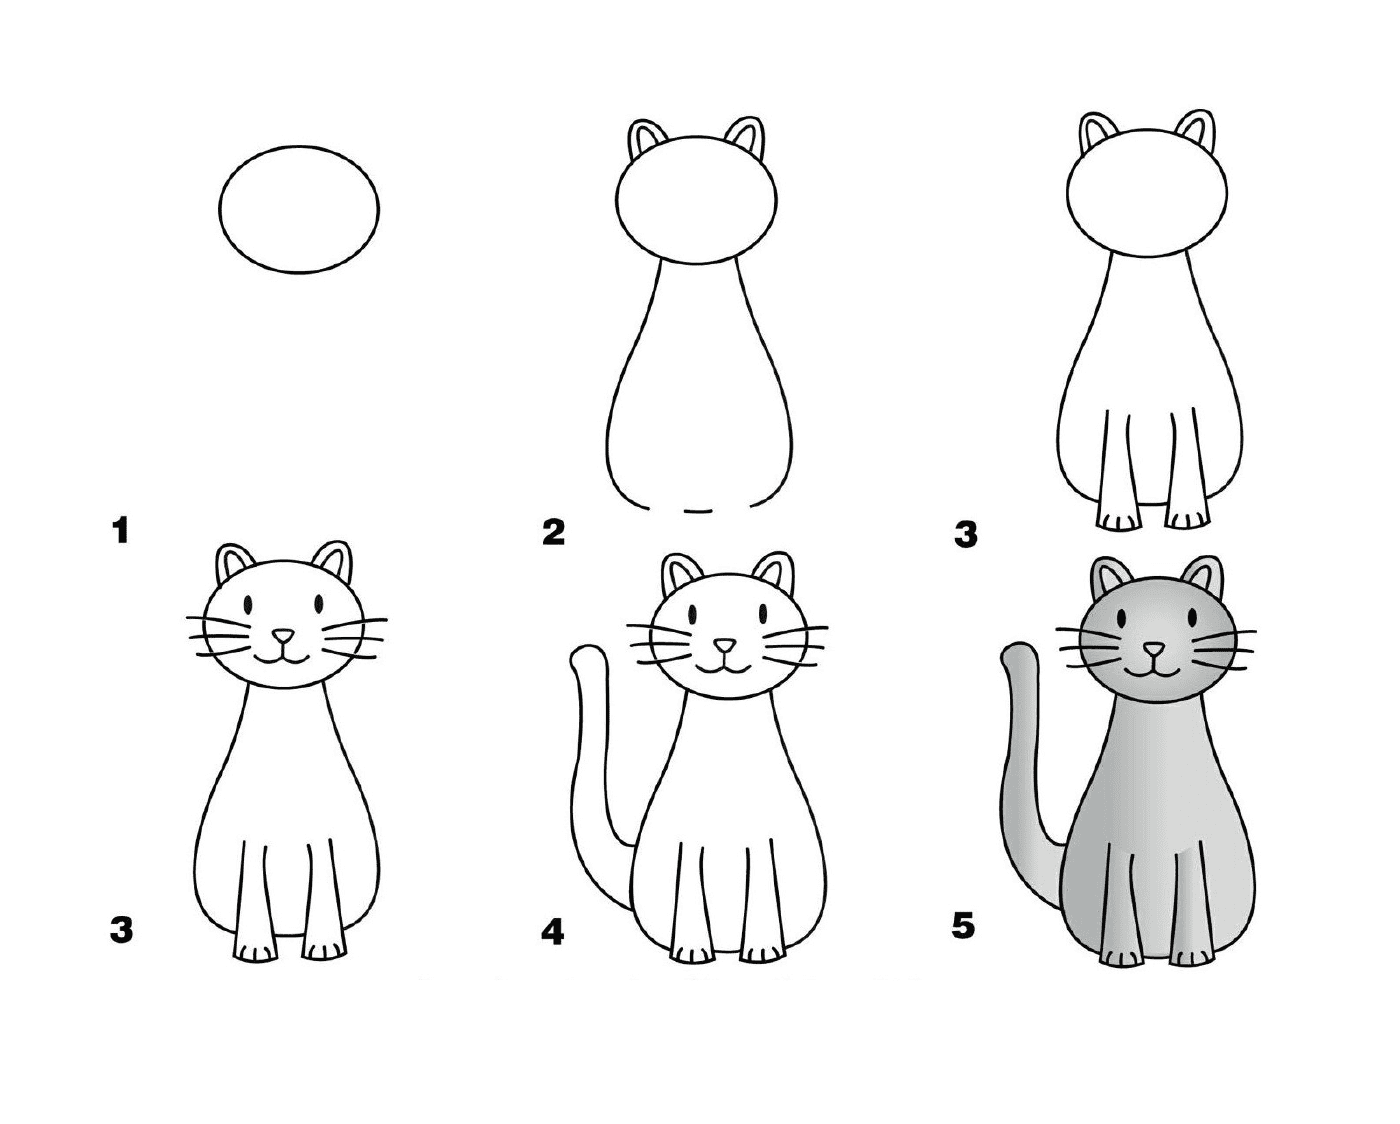  Cómo dibujar un gato sencillo 